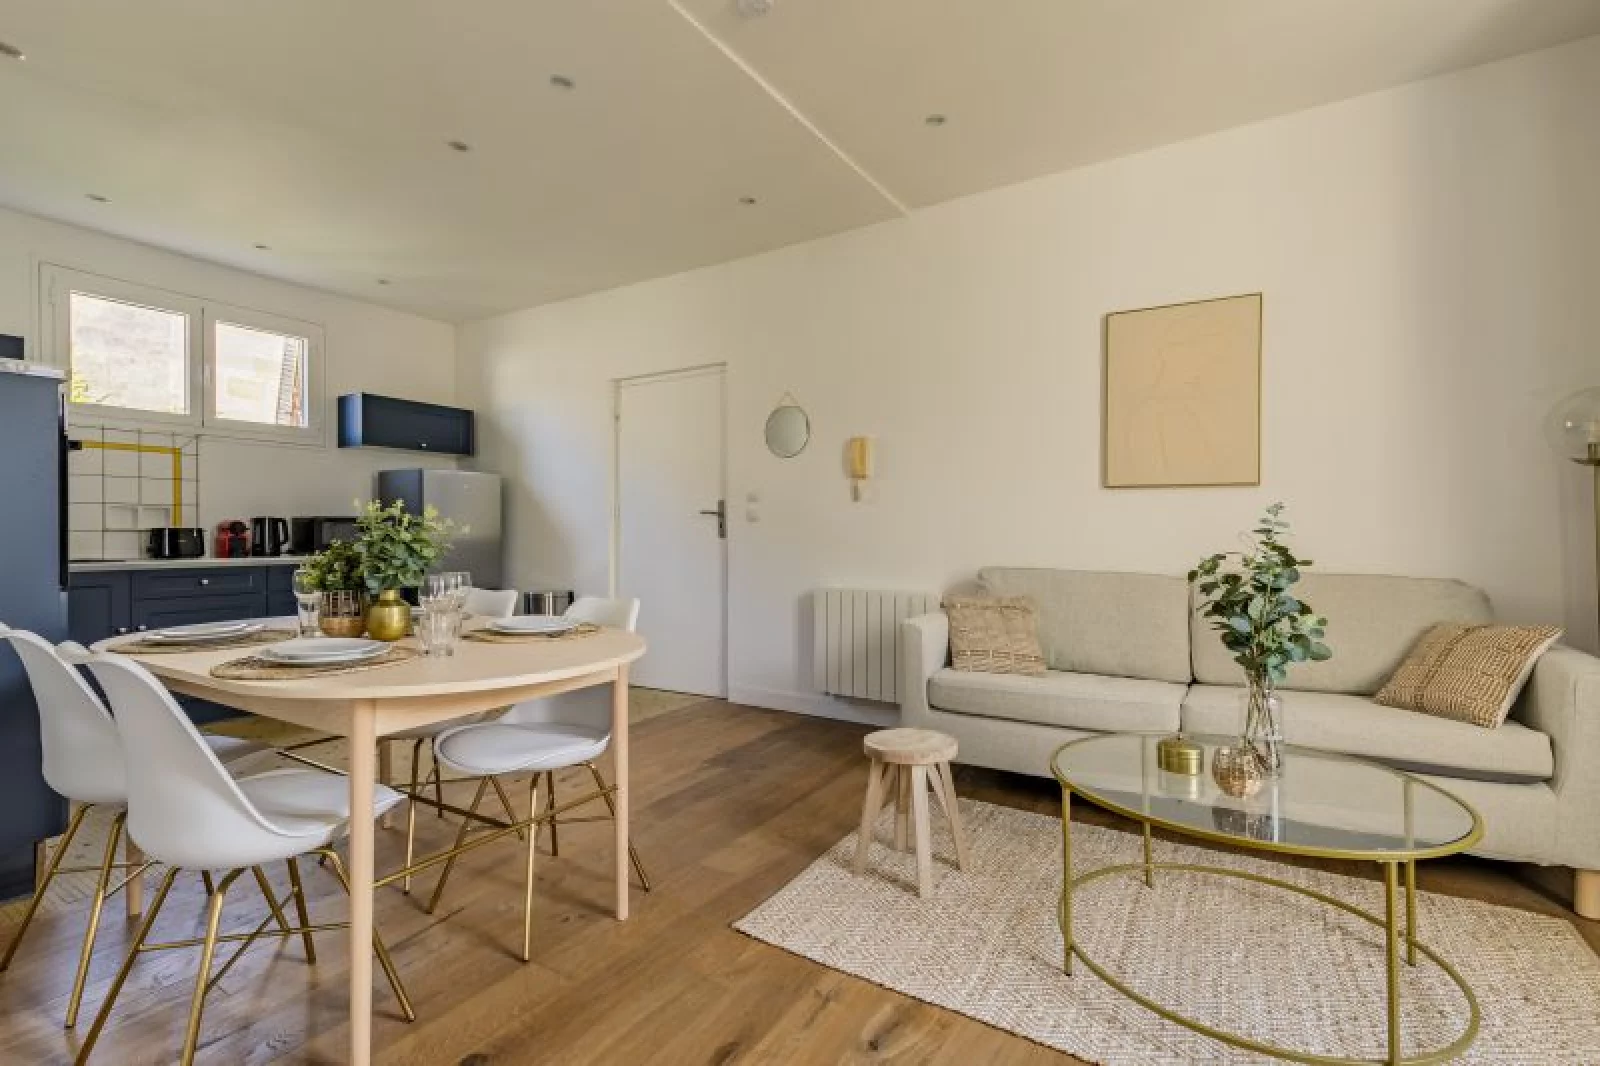 Location appartement meublé 2 pièces 50m² (Bordeaux - Mériadeck)